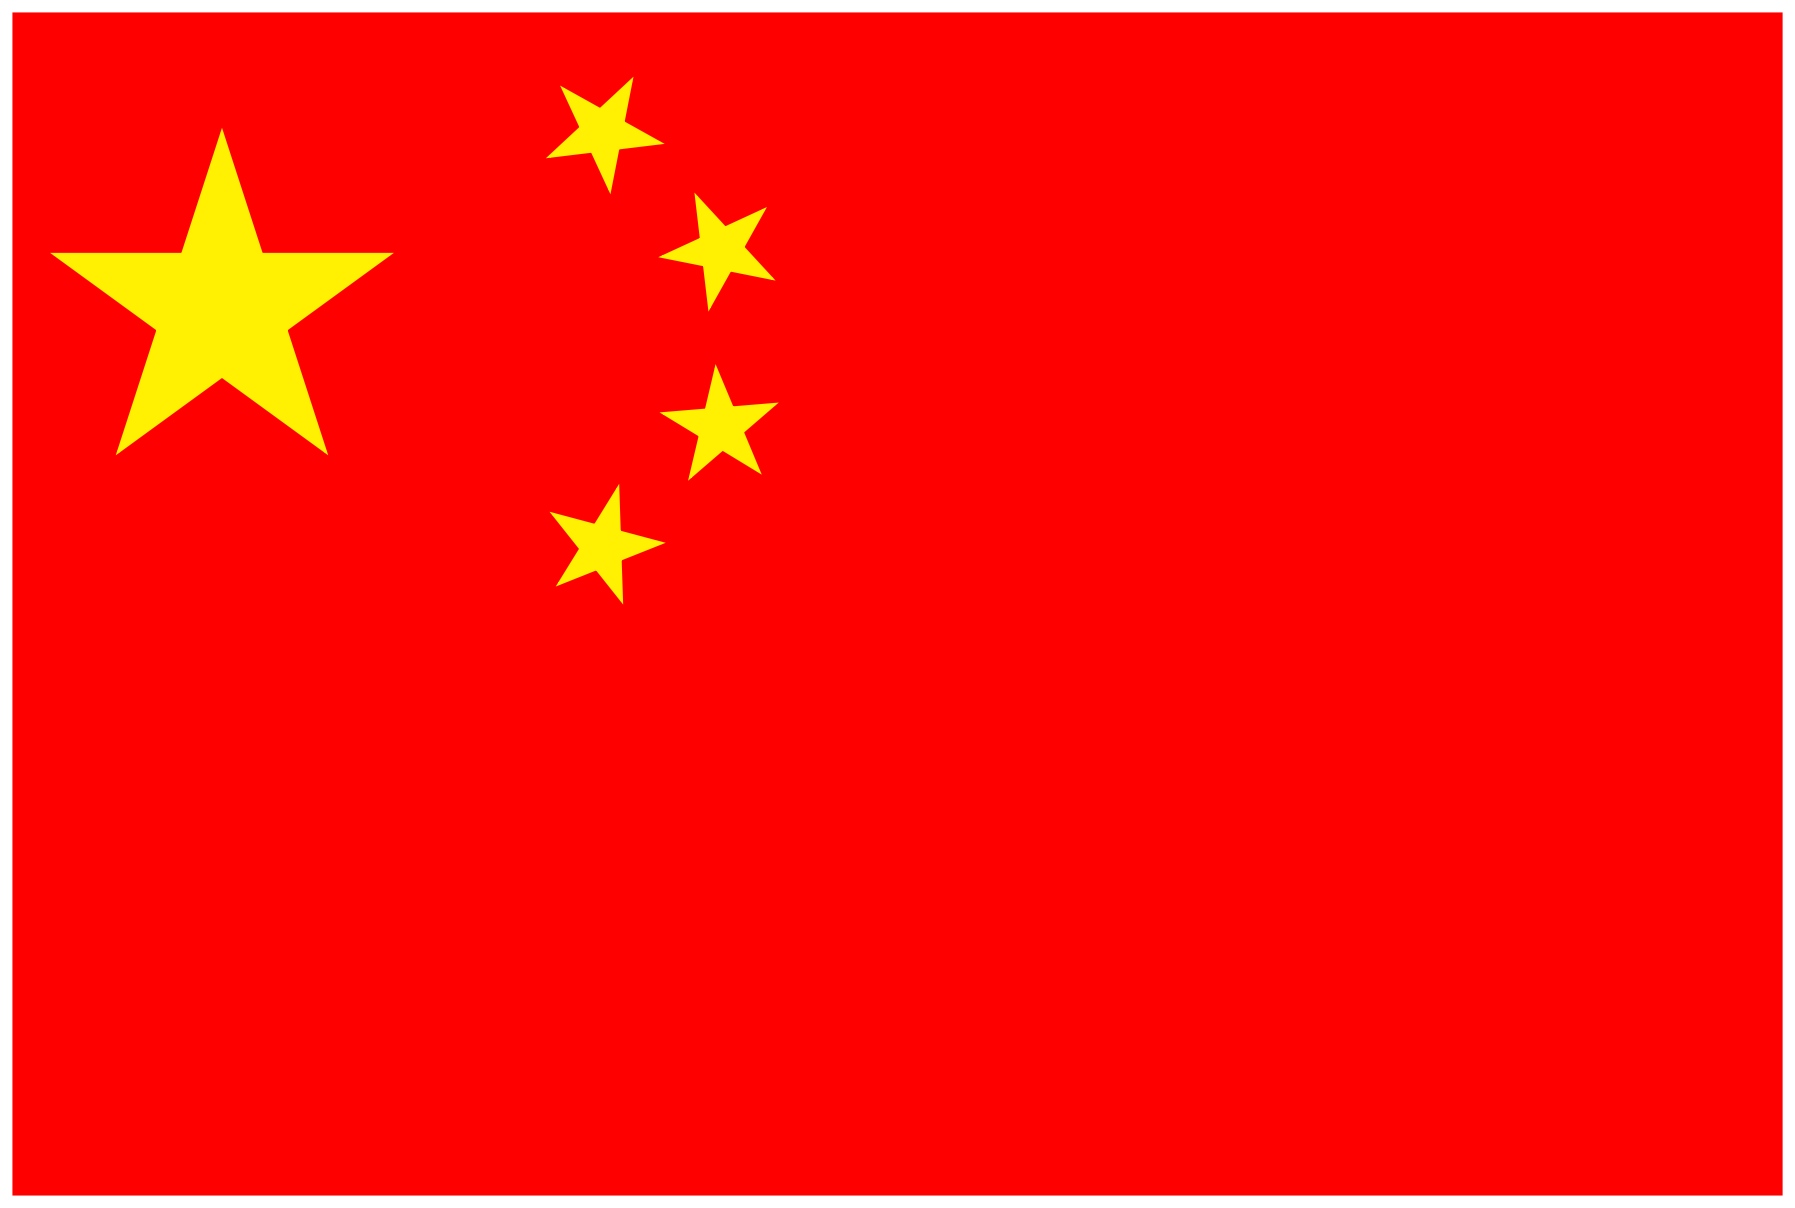 基于tkz-euclide宏包用纯尺规作图法绘制中华人民共和国国旗